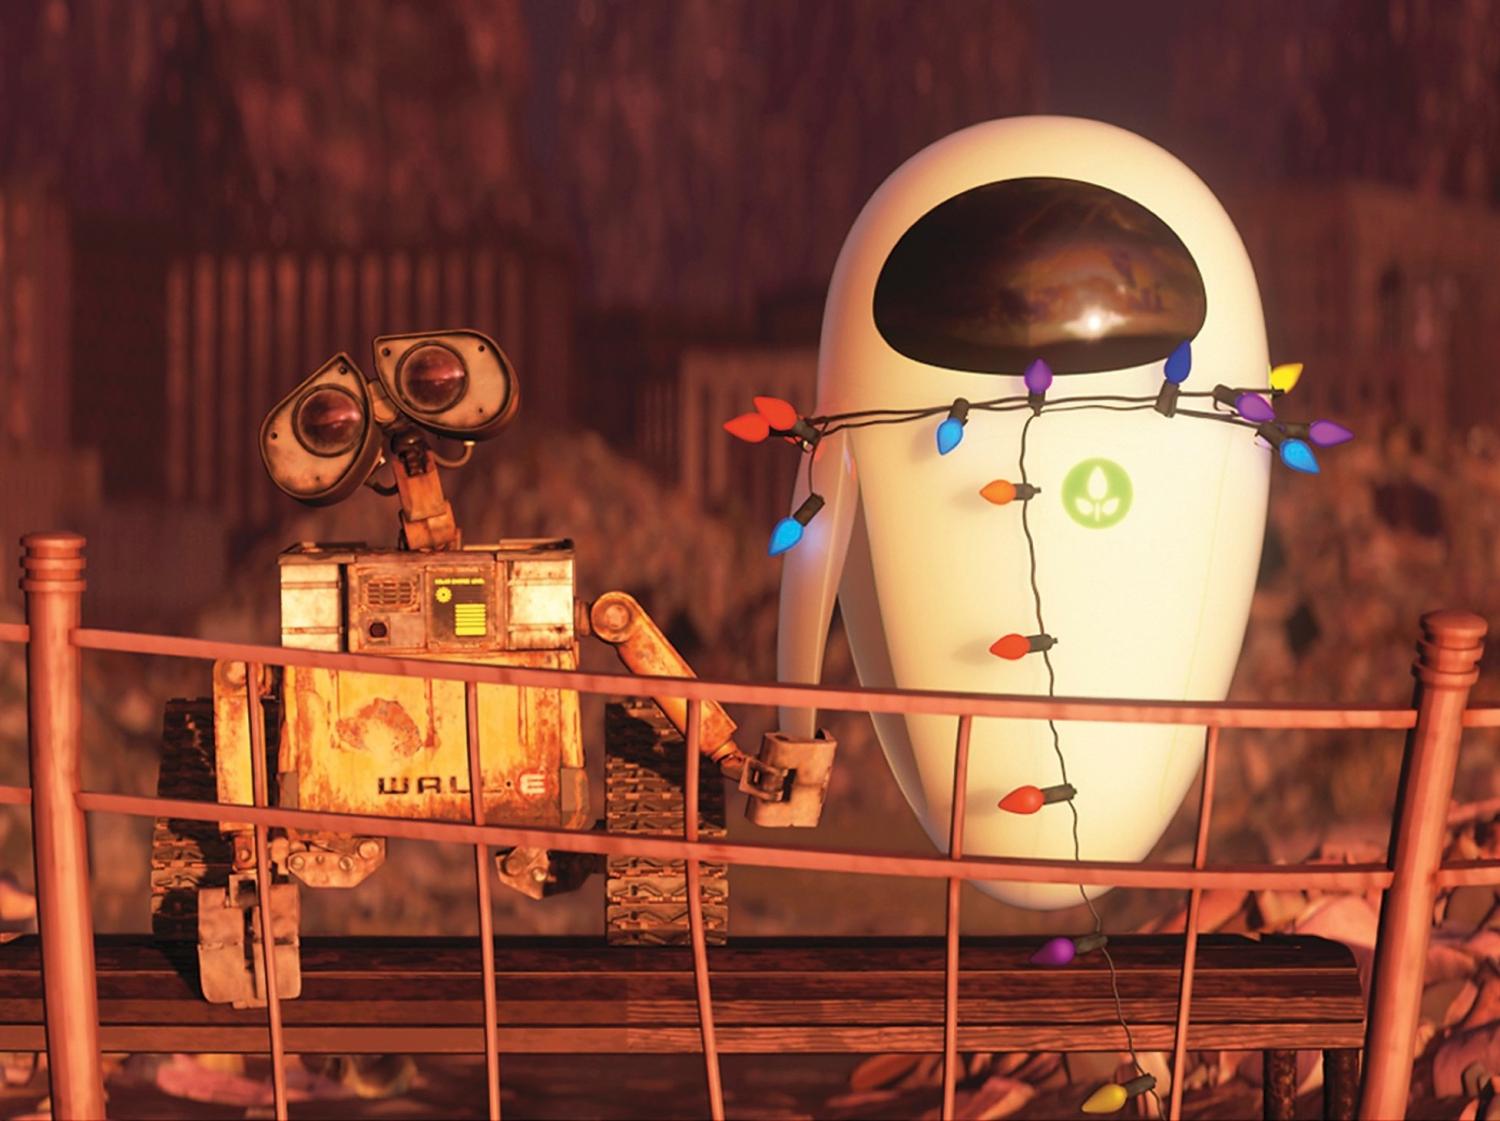 WALL-E - chú robot dễ thương và đầy tích cực